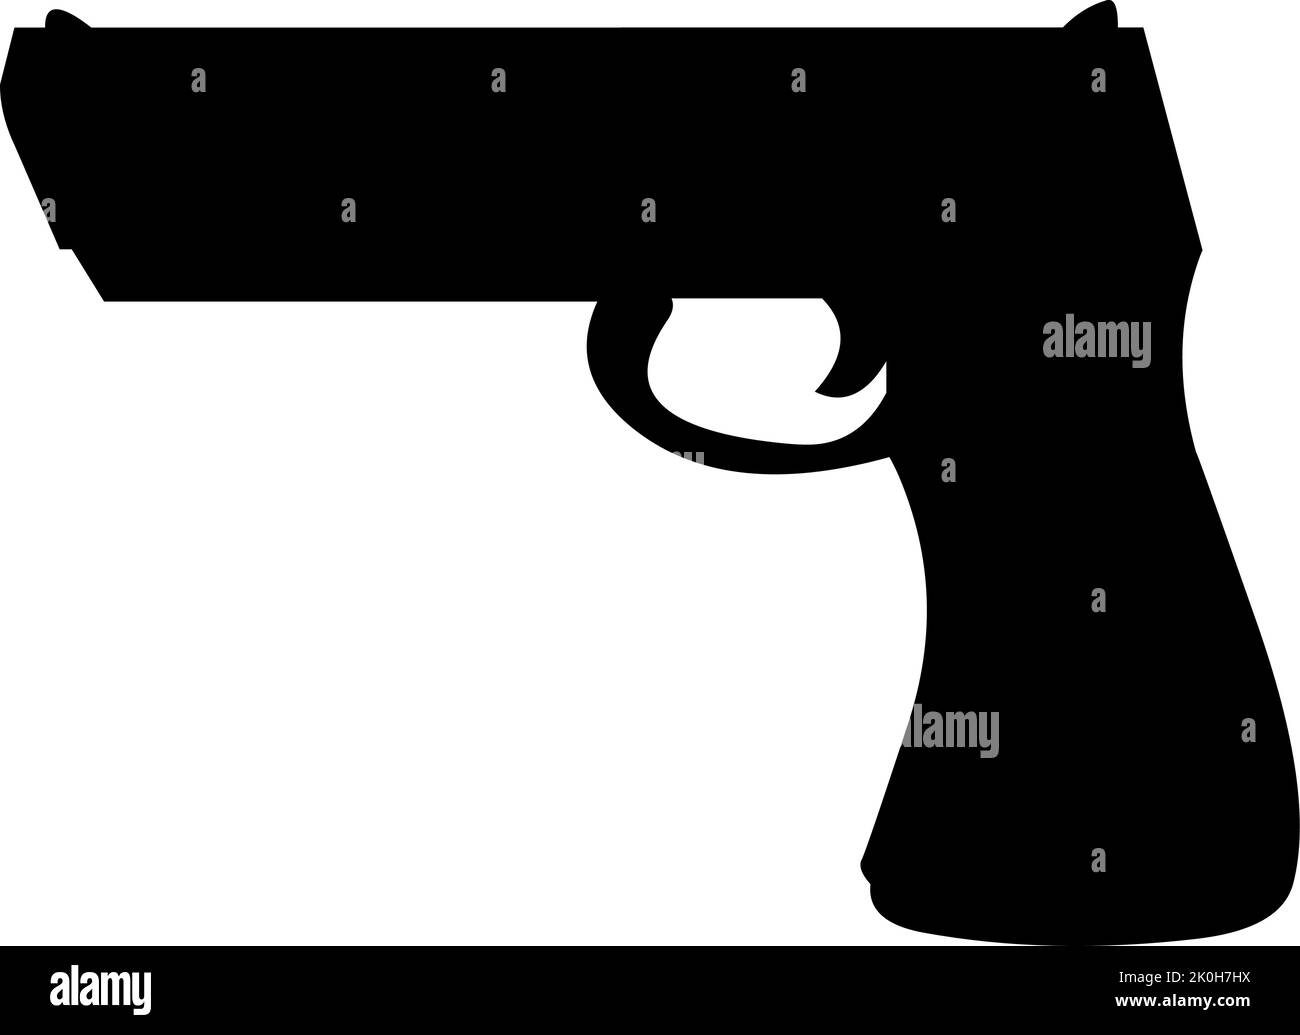 Vektor-Illustration der schwarzen Silhouette einer Waffe Stock Vektor